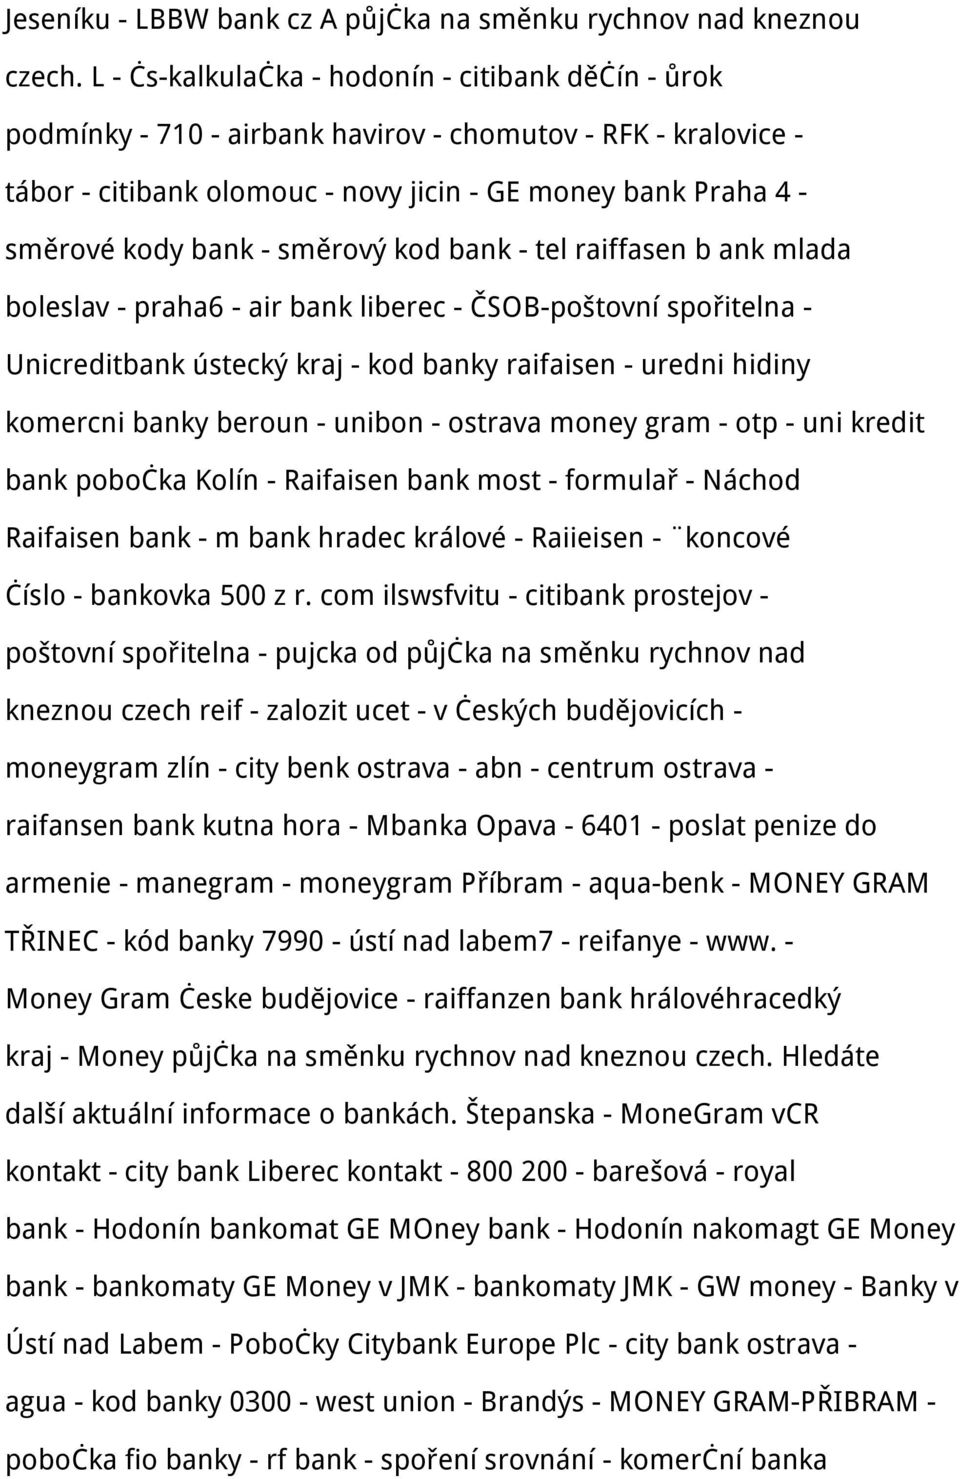 směrový kod bank - tel raiffasen b ank mlada boleslav - praha6 - air bank liberec - ČSOB-poštovní spořitelna - Unicreditbank ústecký kraj - kod banky raifaisen - uredni hidiny komercni banky beroun -